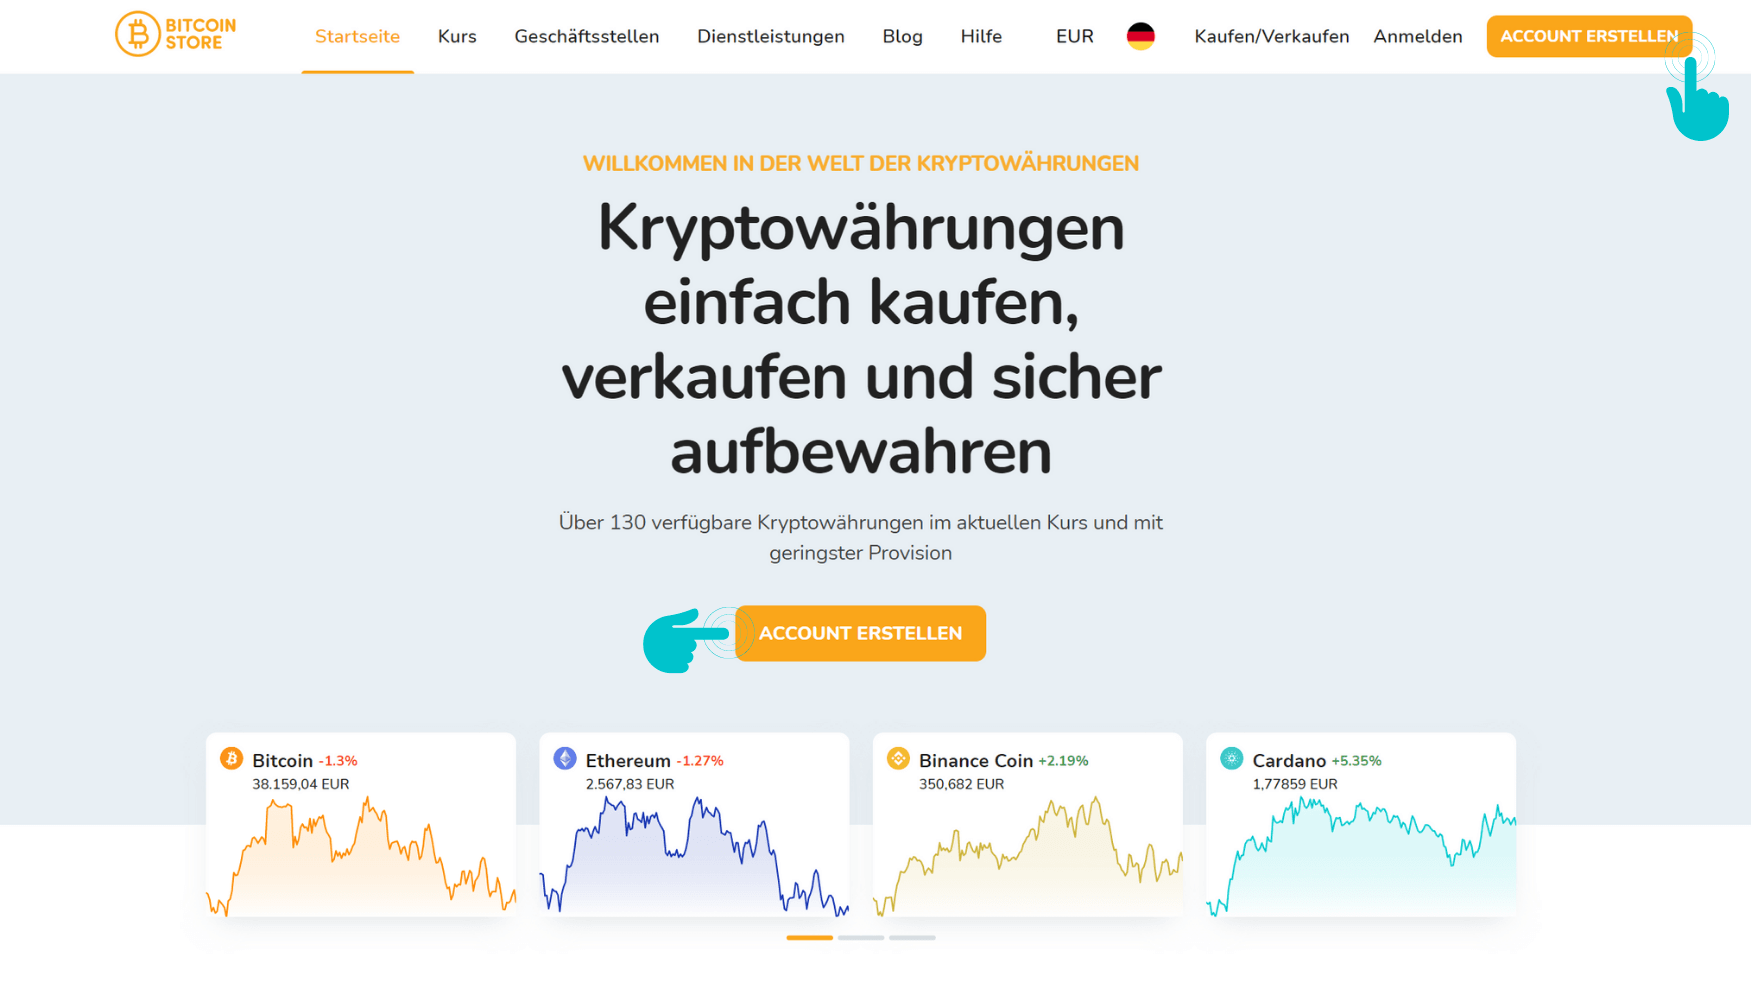 Startbildschirm der Bitcoin Store-Plattform.